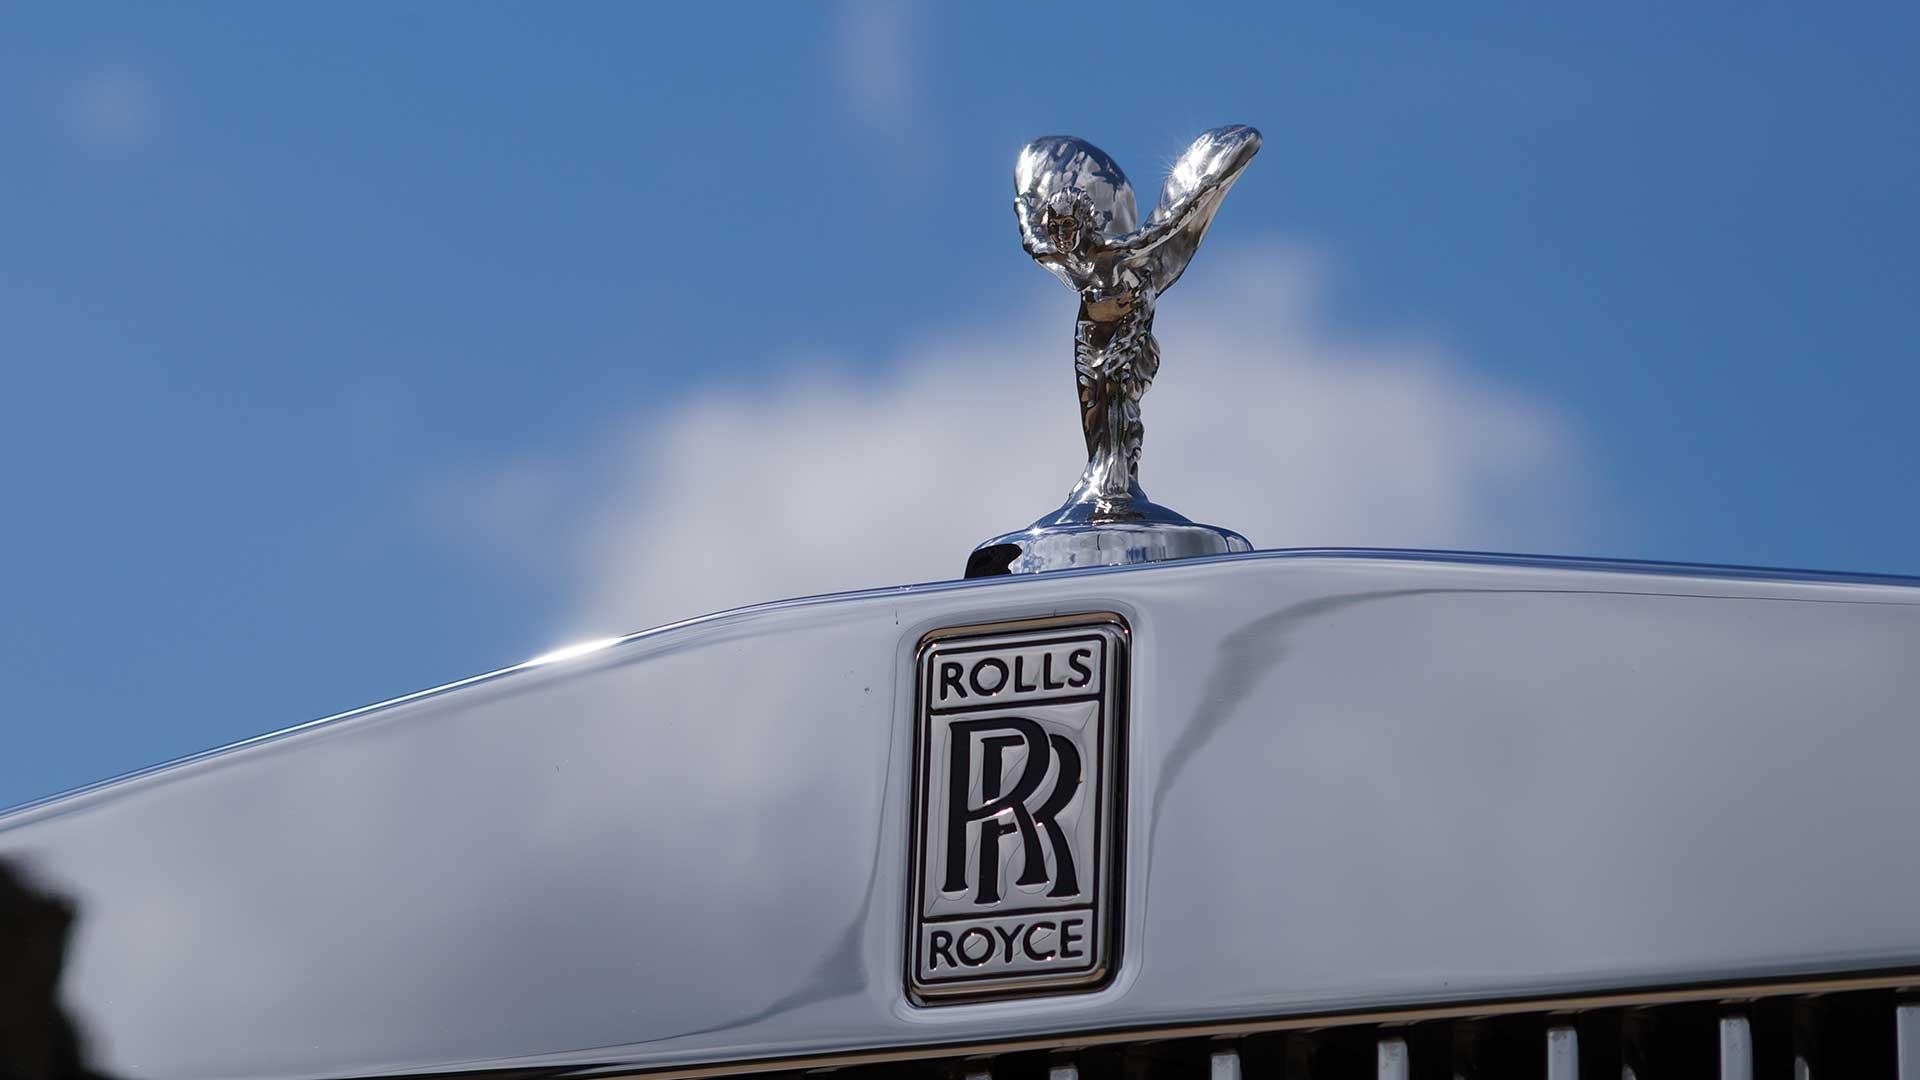 Автомобиль Rolls-Royce: воплощение материального совершенства и безупречности формы